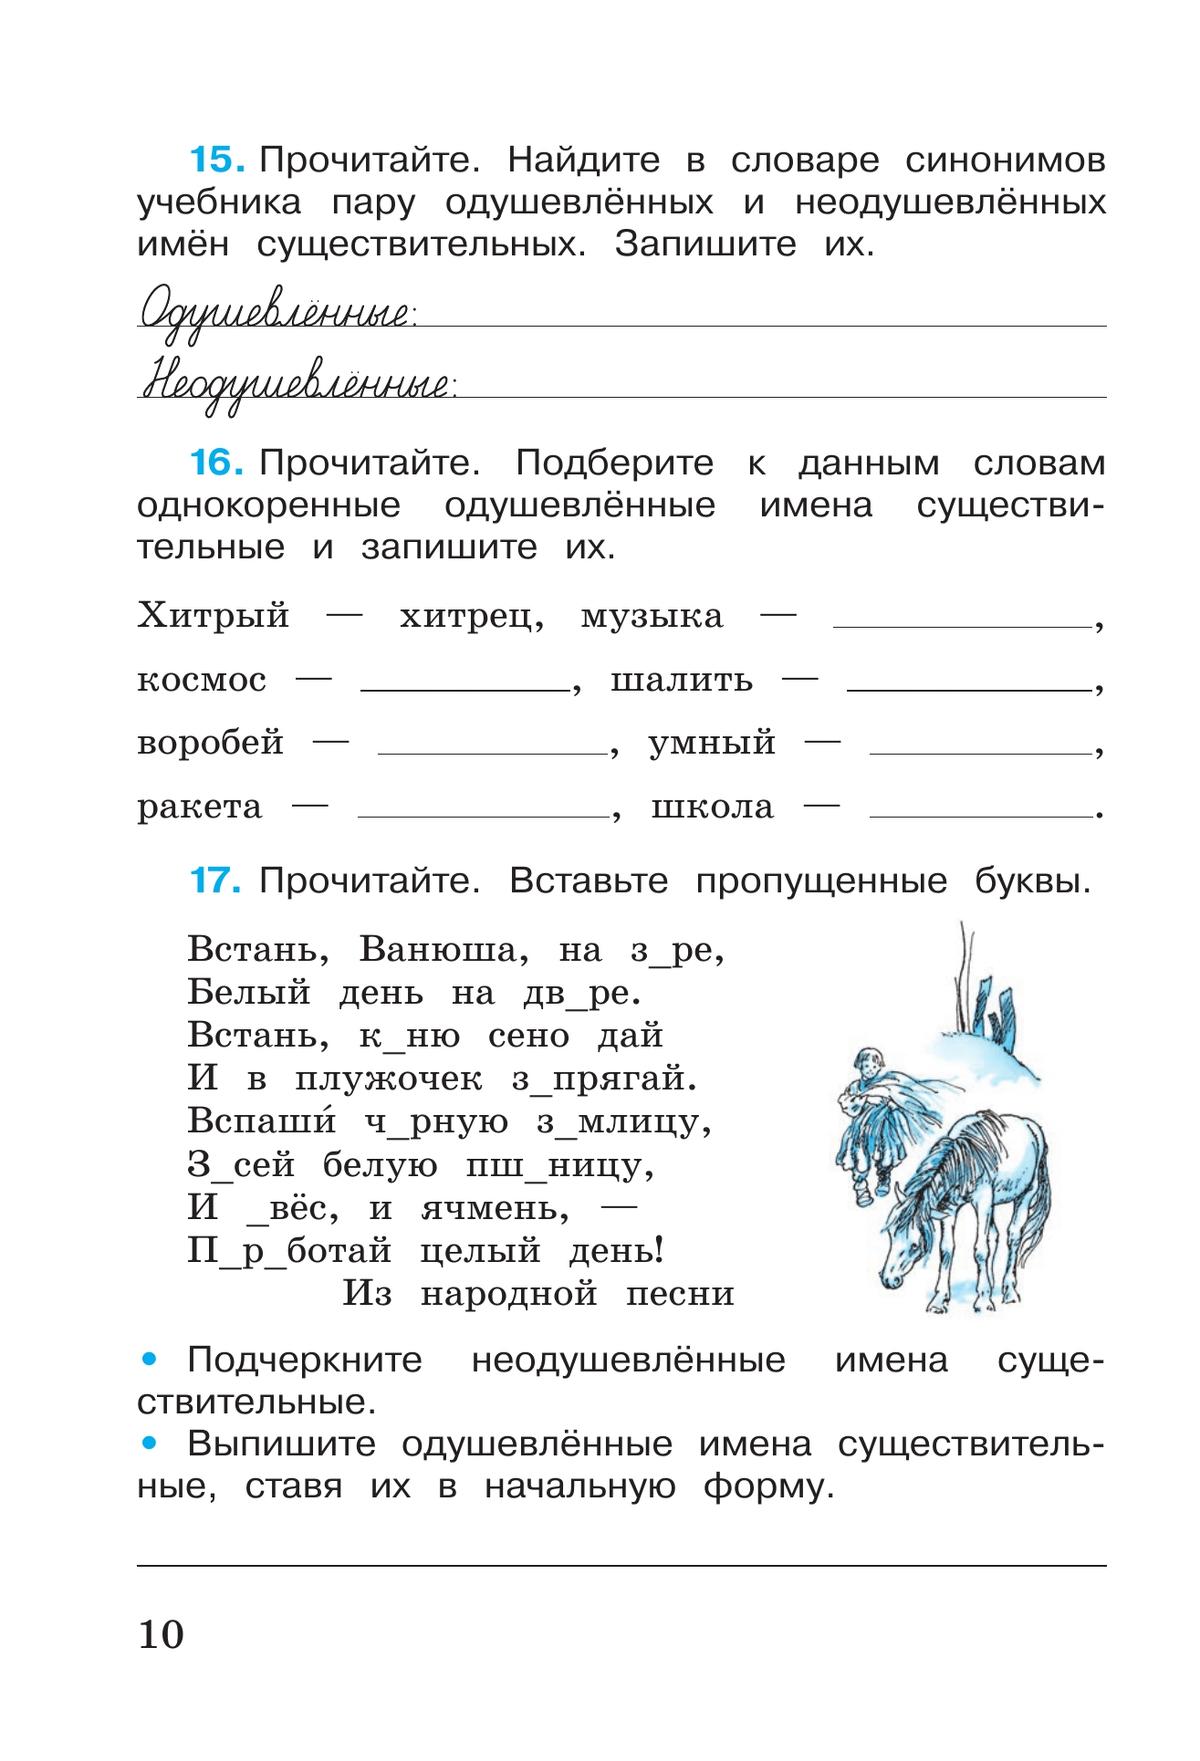 Русский язык. Рабочая тетрадь. 3 класс. В 2 частях. Часть 2 9